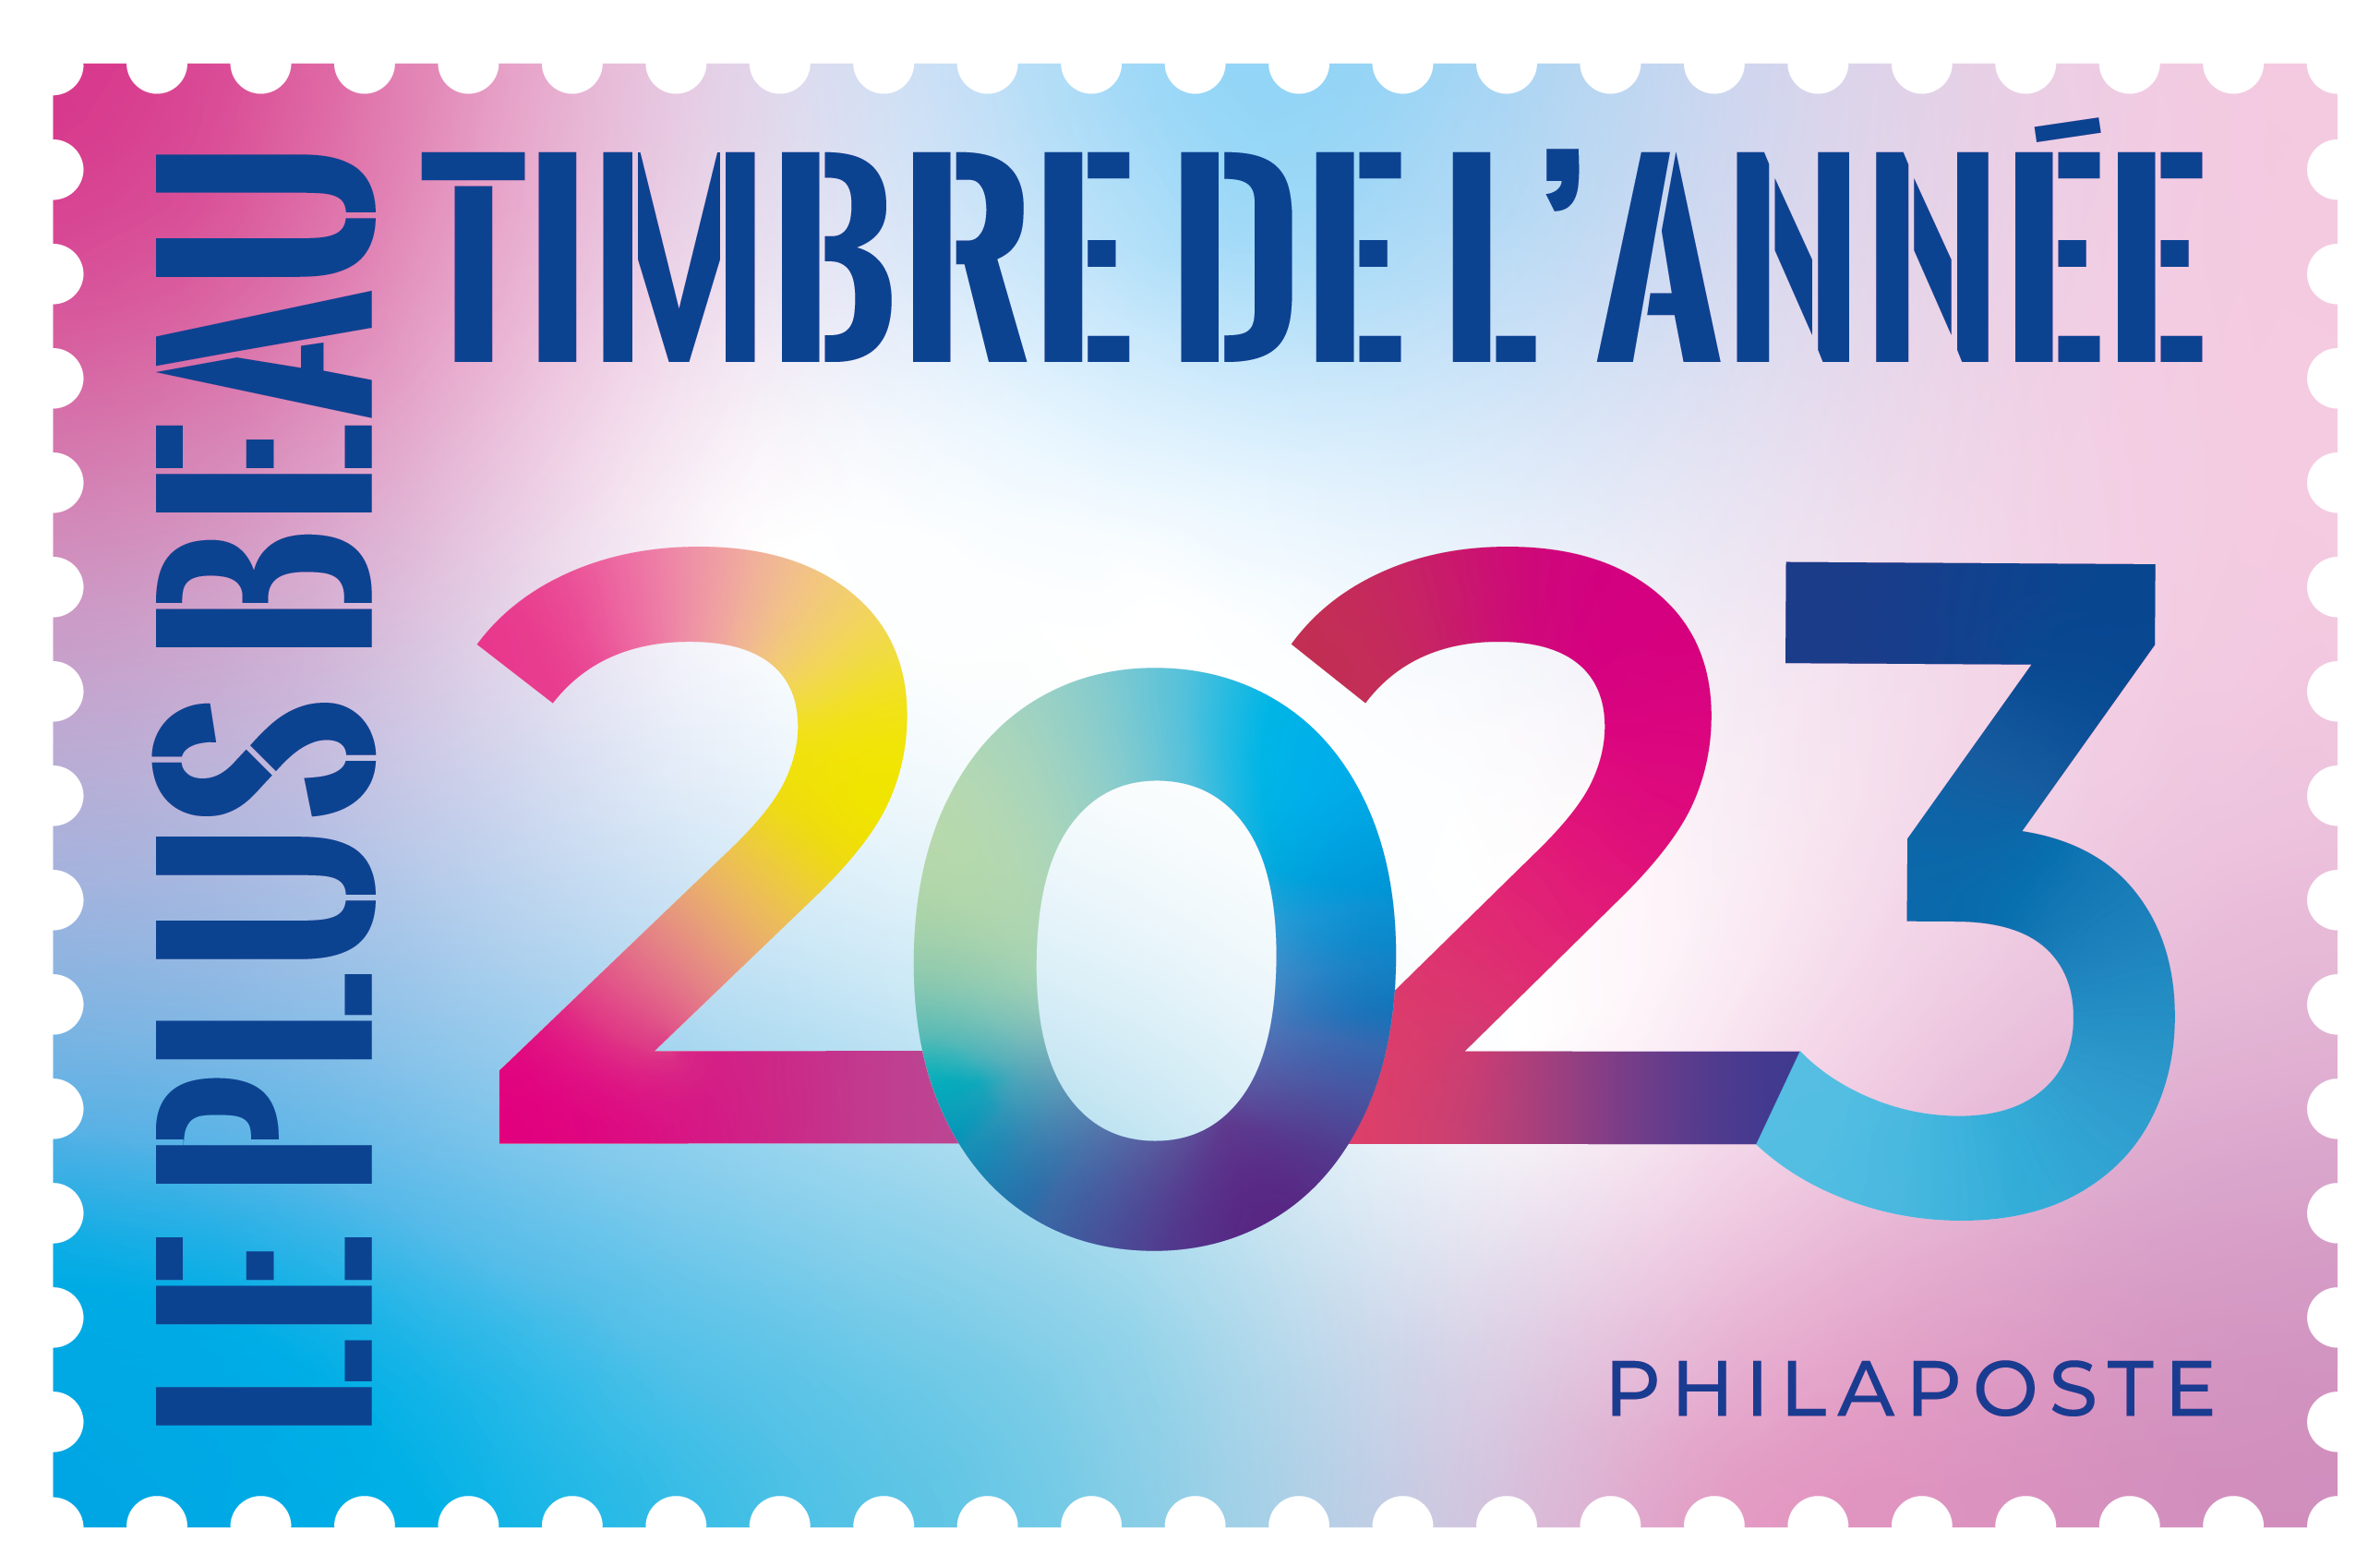 Élection du timbre 2023